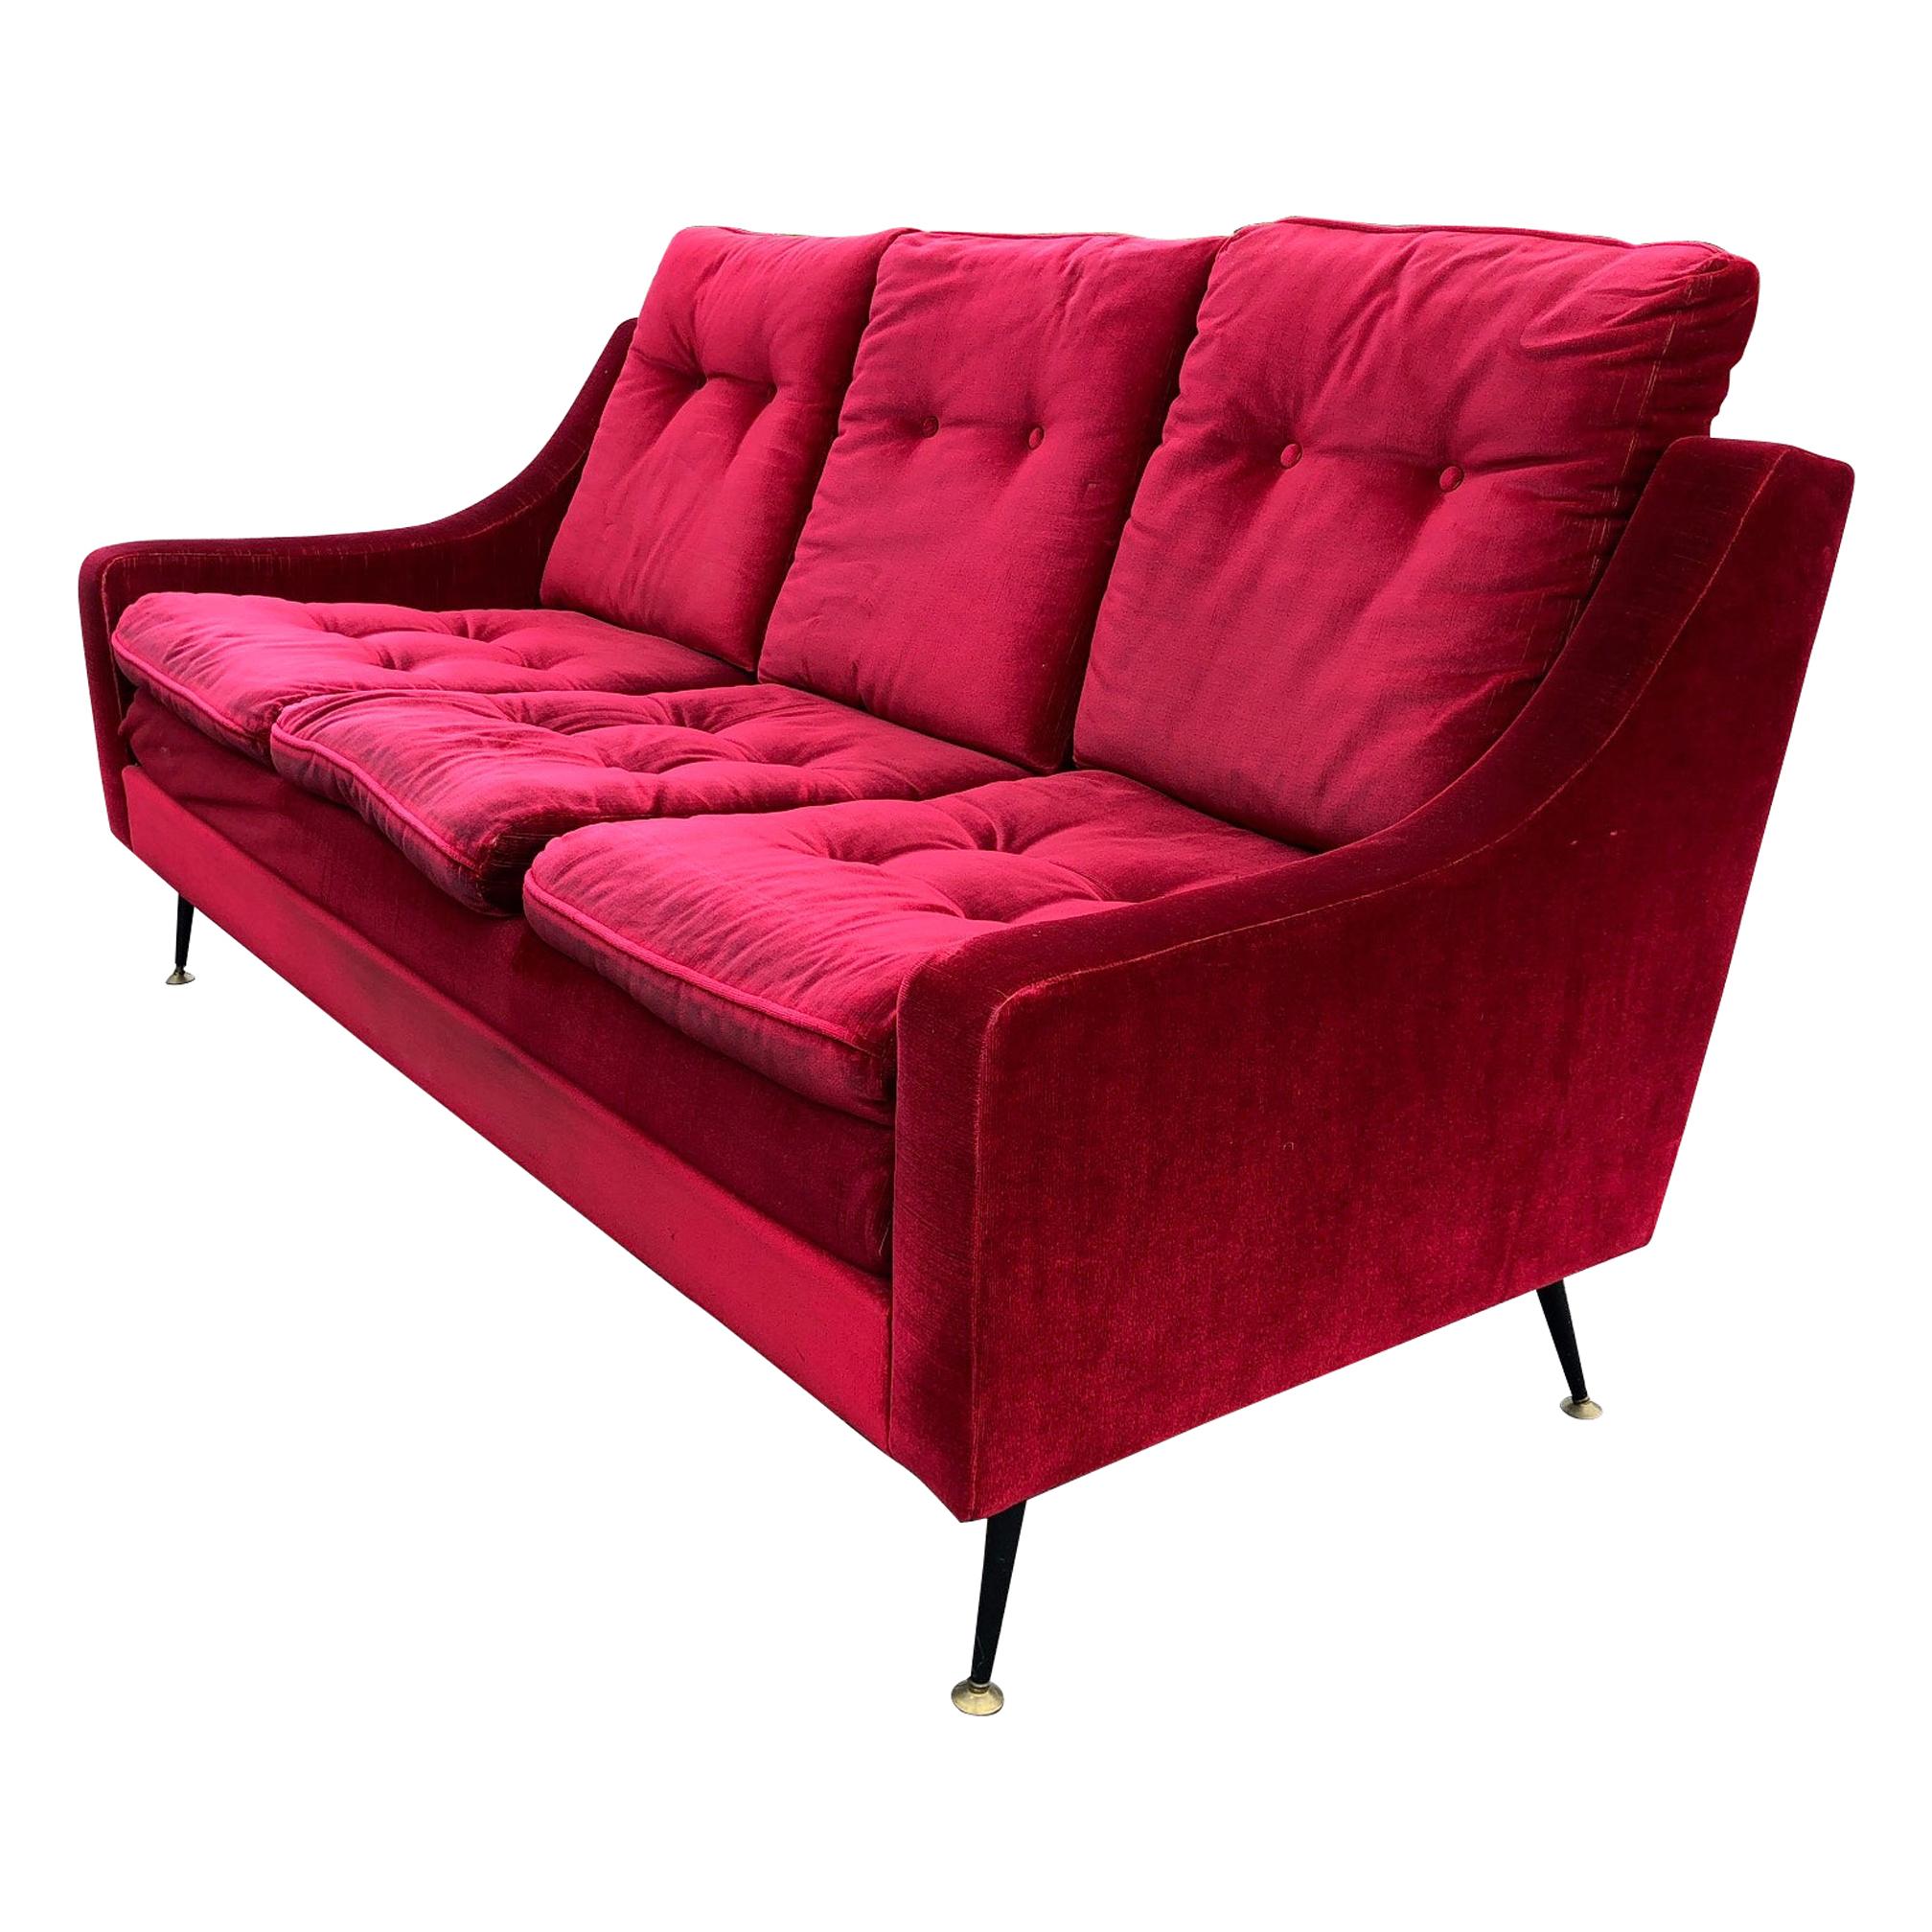 Red Velvet Sofa from the 1950s